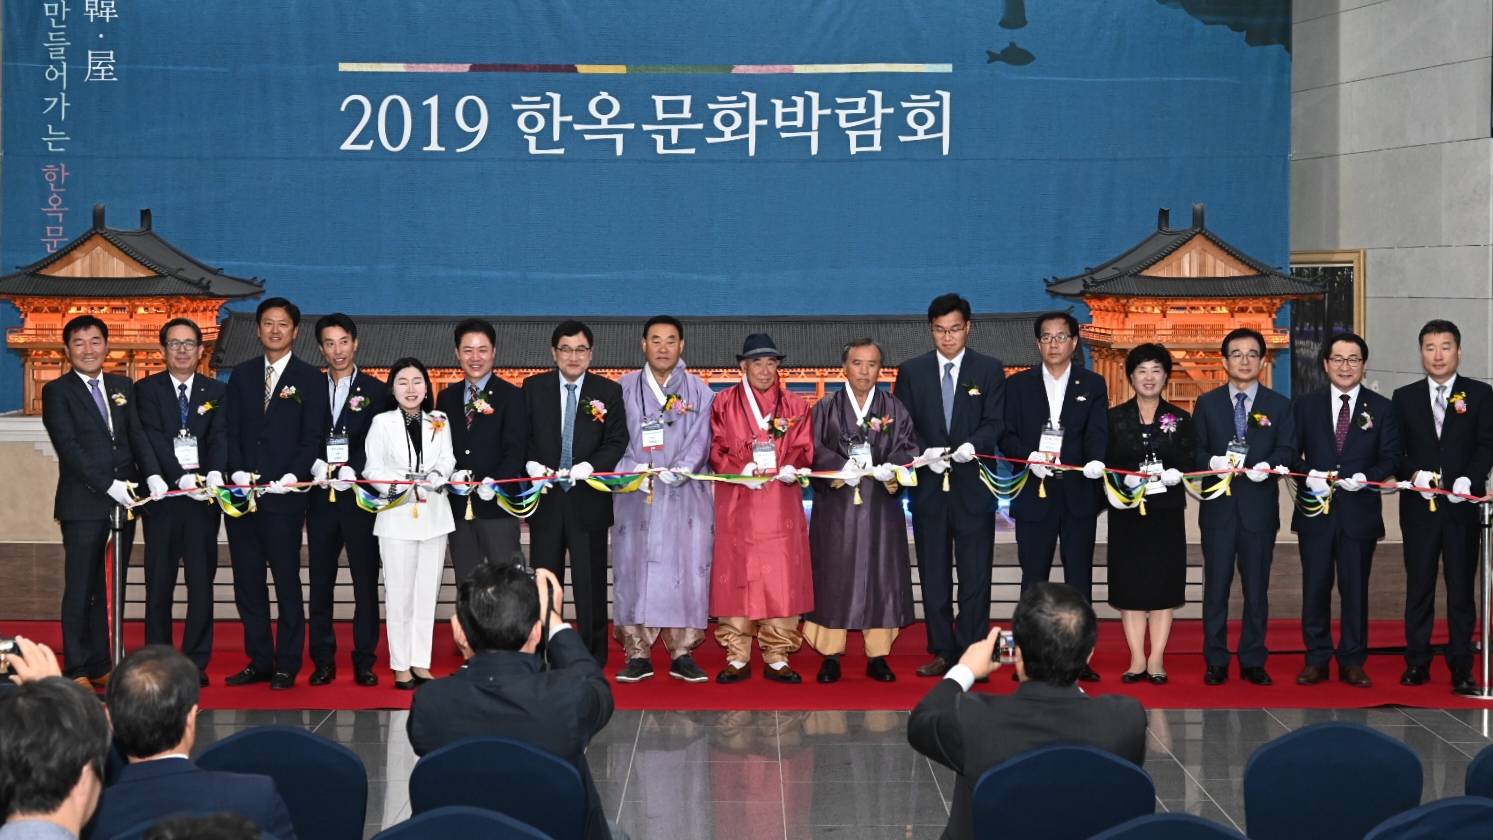 2019 한옥문화박람회